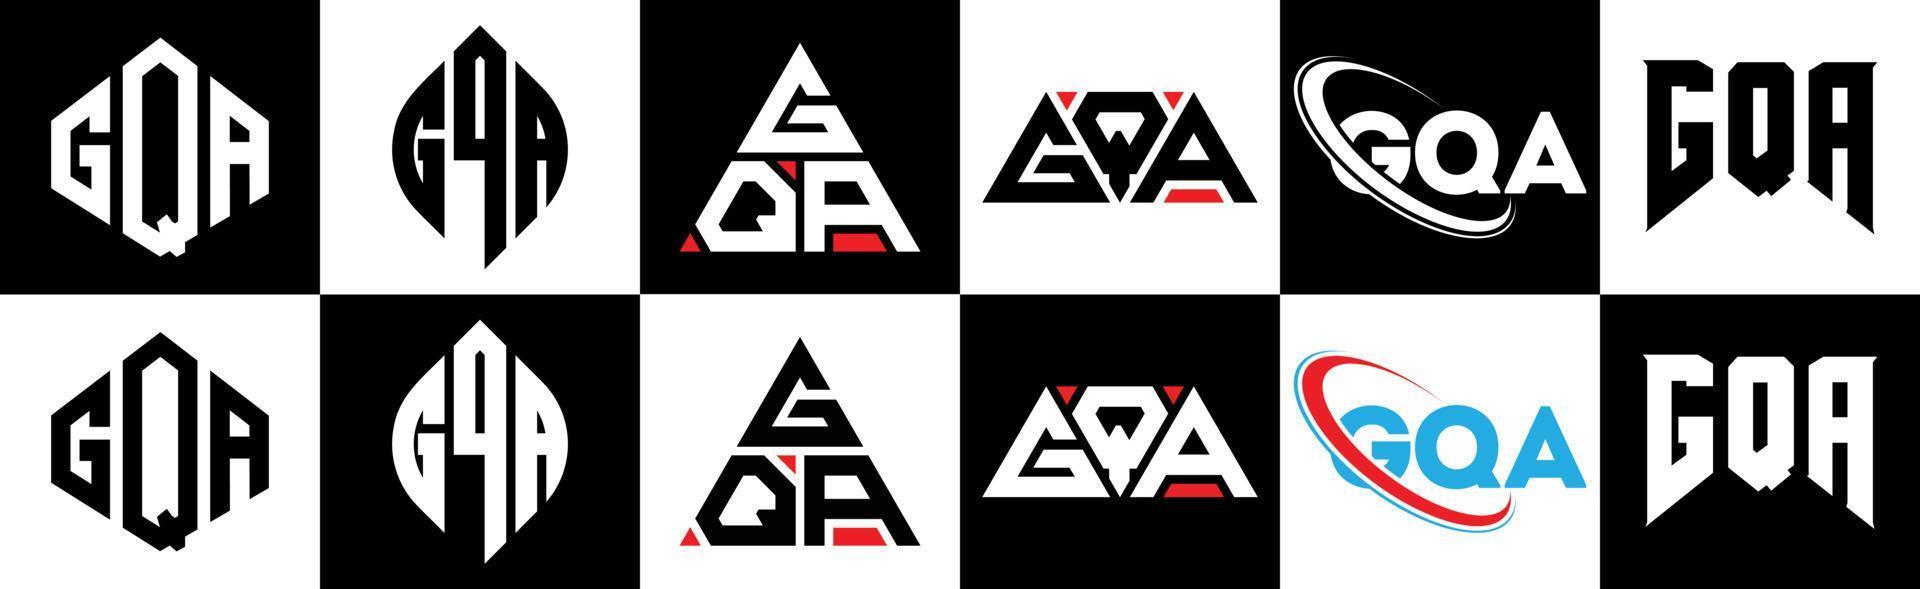 création de logo de lettre gqa en six styles. gqa polygone, cercle, triangle, hexagone, style plat et simple avec logo de lettre de variation de couleur noir et blanc dans un plan de travail. logo gqa minimaliste et classique vecteur